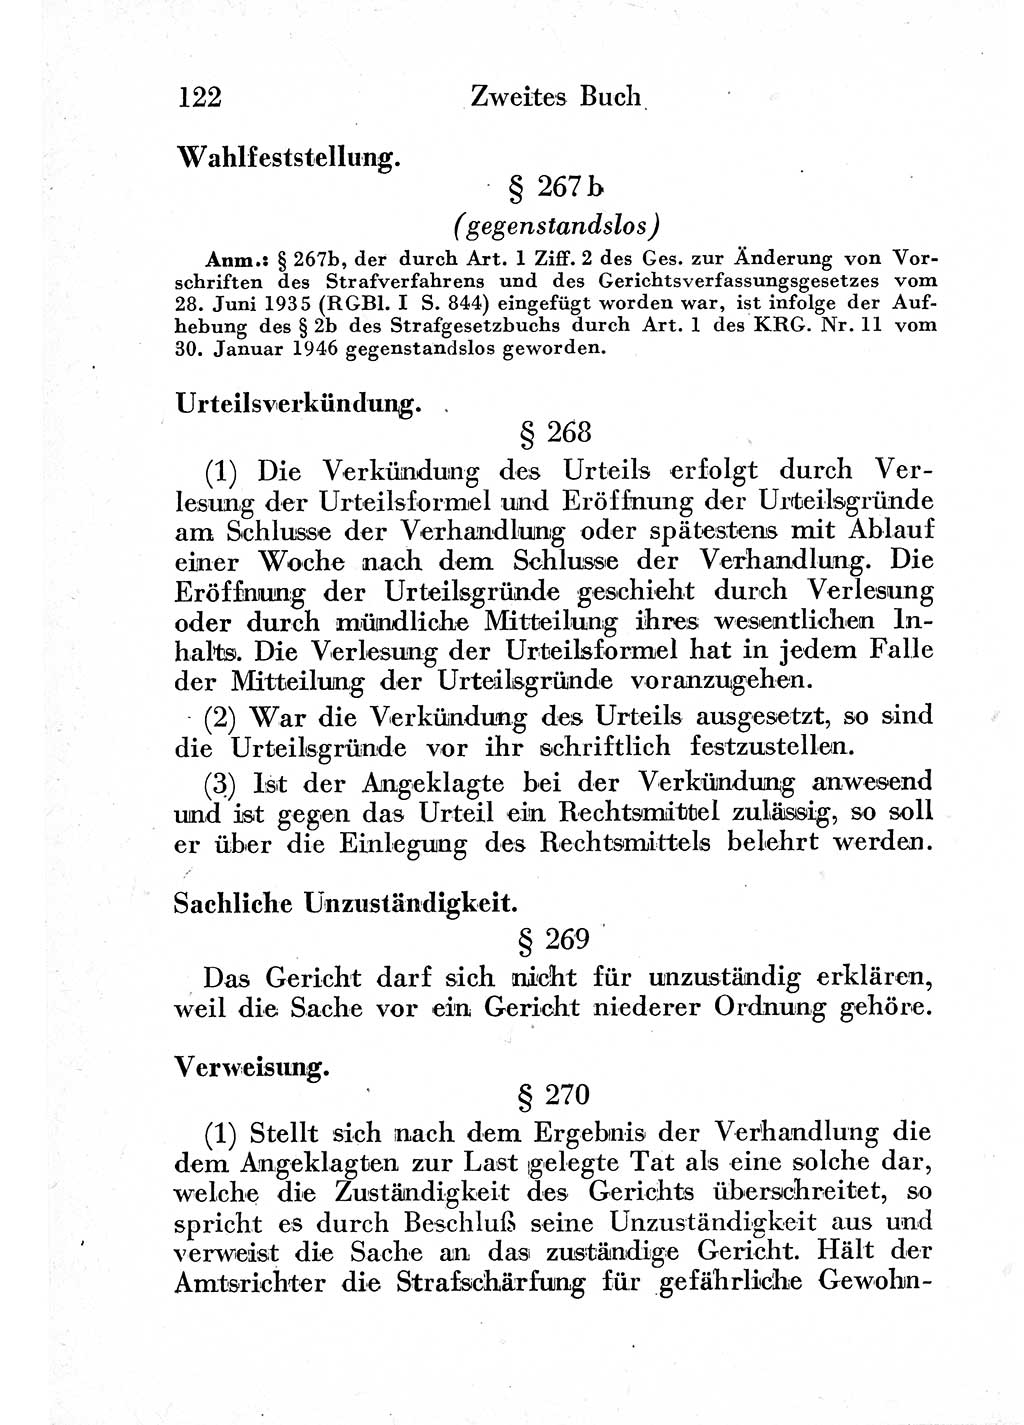 Strafprozeßordnung (StPO), Gerichtsverfassungsgesetz (GVG) und zahlreiche Nebengesetze der sowjetischen Besatzungszone (SBZ) in Deutschland 1949, Seite 122 (StPO GVG Ges. SBZ Dtl. 1949, S. 122)